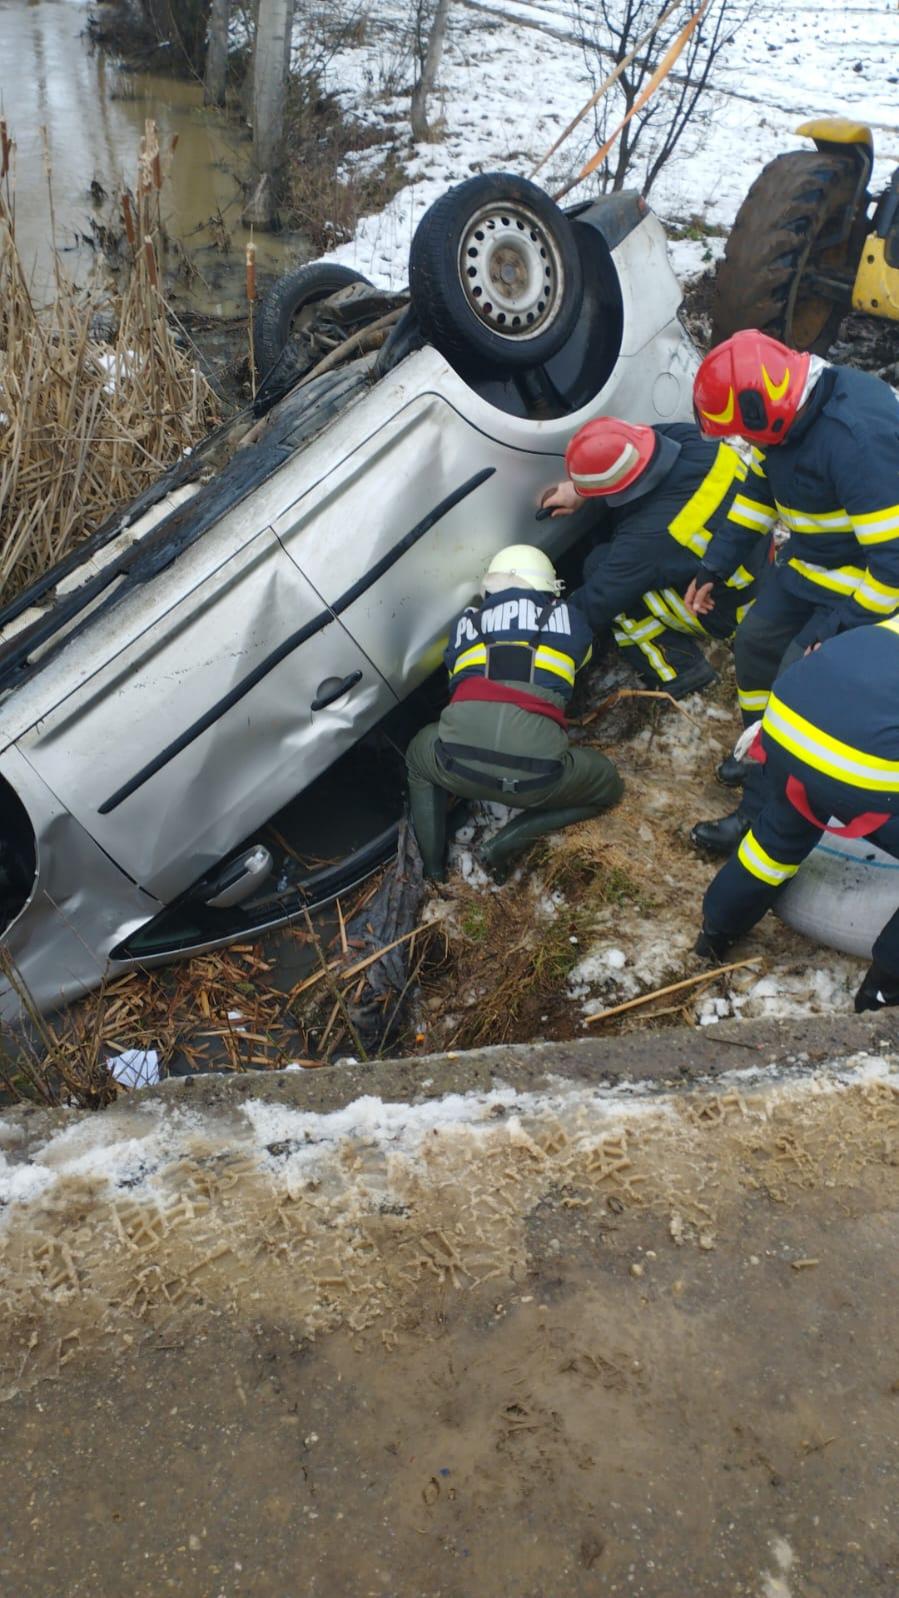 Doi bărbați din Argeș au murit, după ce mașina în care erau s-a răsturnat pe palfon, într-un pârâu